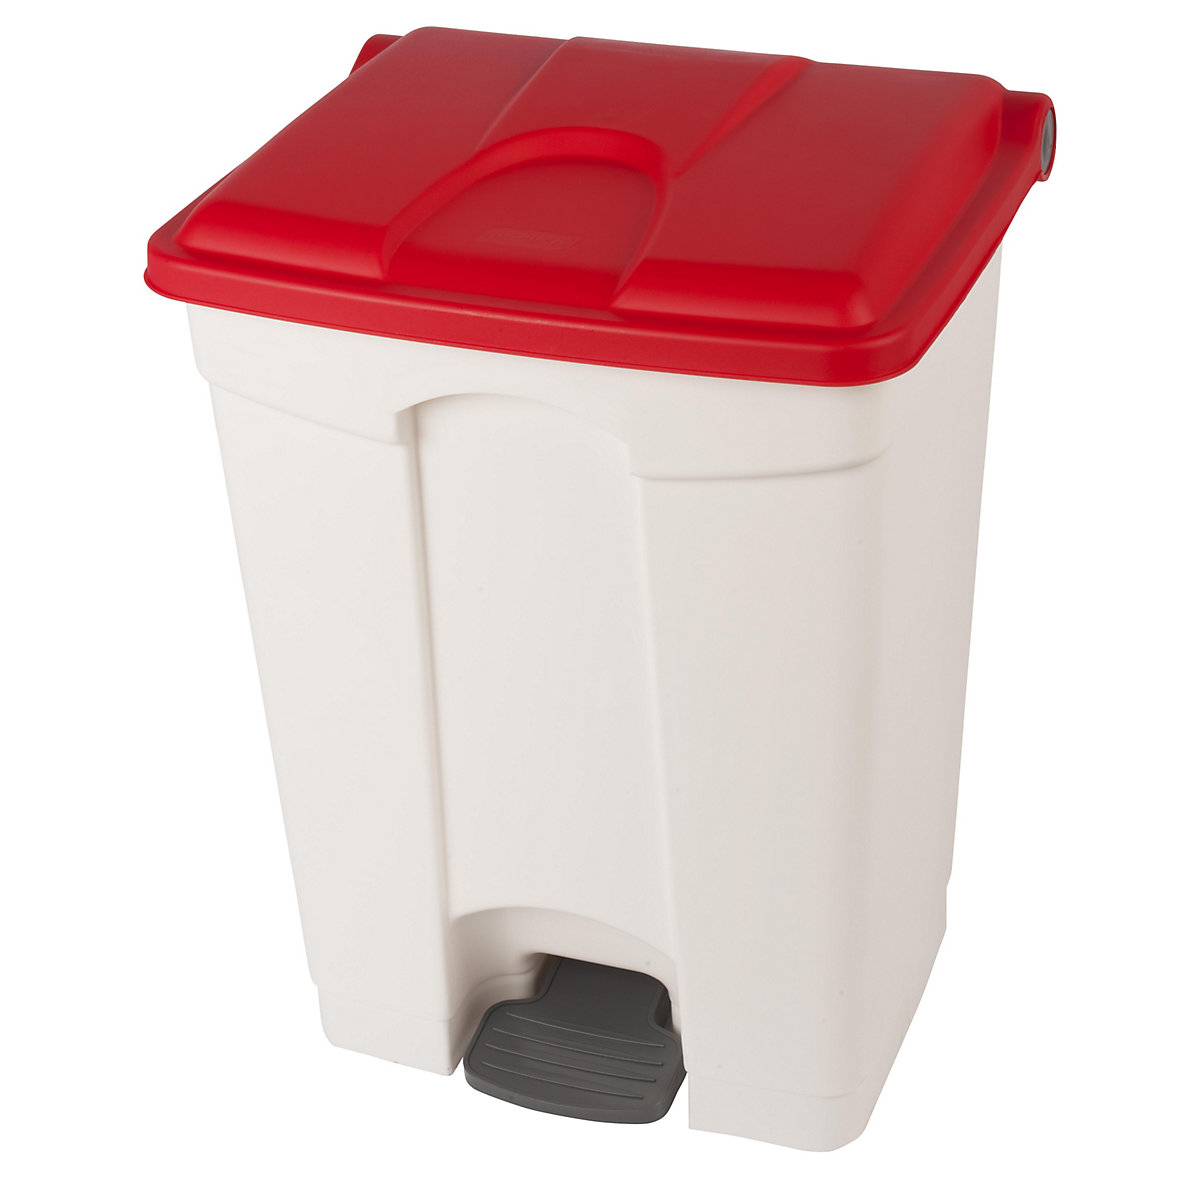 Zbiralnik odpadkov s pedalom, prostornina 70 l, ŠxVxG 505 x 675 x 415 mm, bela, rdeč pokrov-5